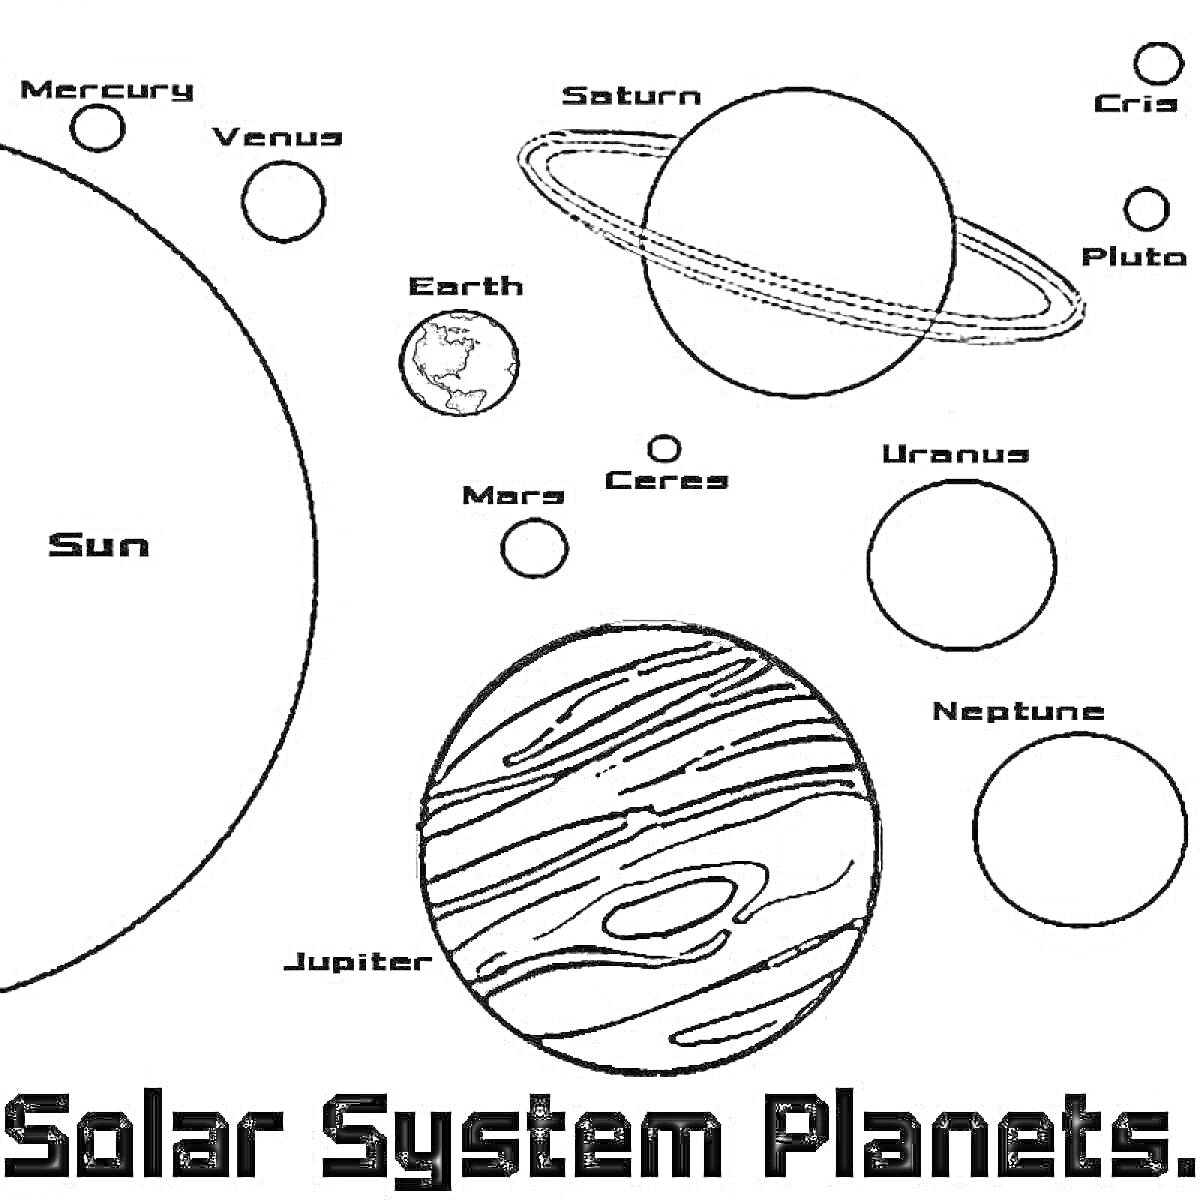 Раскраска Все планеты Солнечной системы, включая Солнце и пояс астероидов (Церера), на одном изображении: Солнце, Меркурий, Венера, Земля, Марс, Церера, Юпитер, Сатурн, Уран, Нептун, Плутон